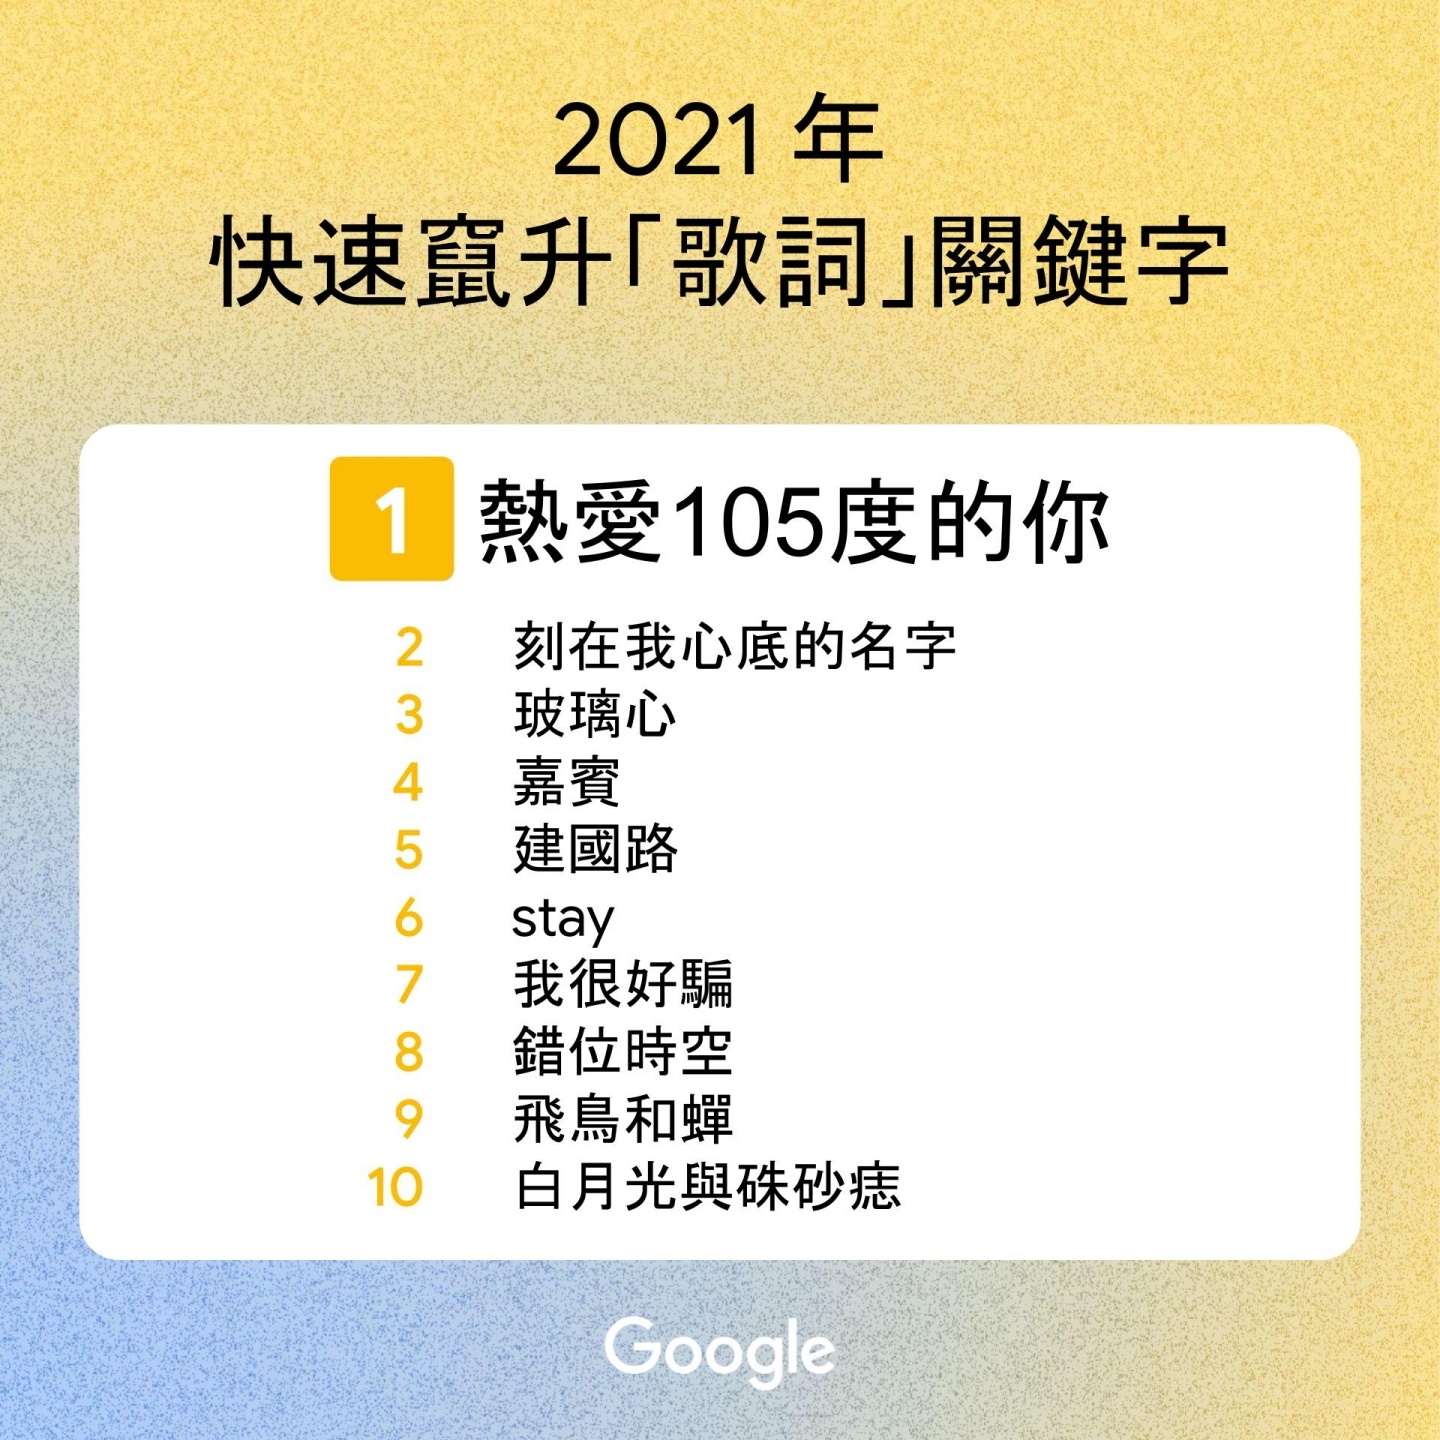 2021 年 Google 臺灣搜尋排行出爐！『 戴資穎 』登熱搜第一，年度關鍵字是『 NBA 』